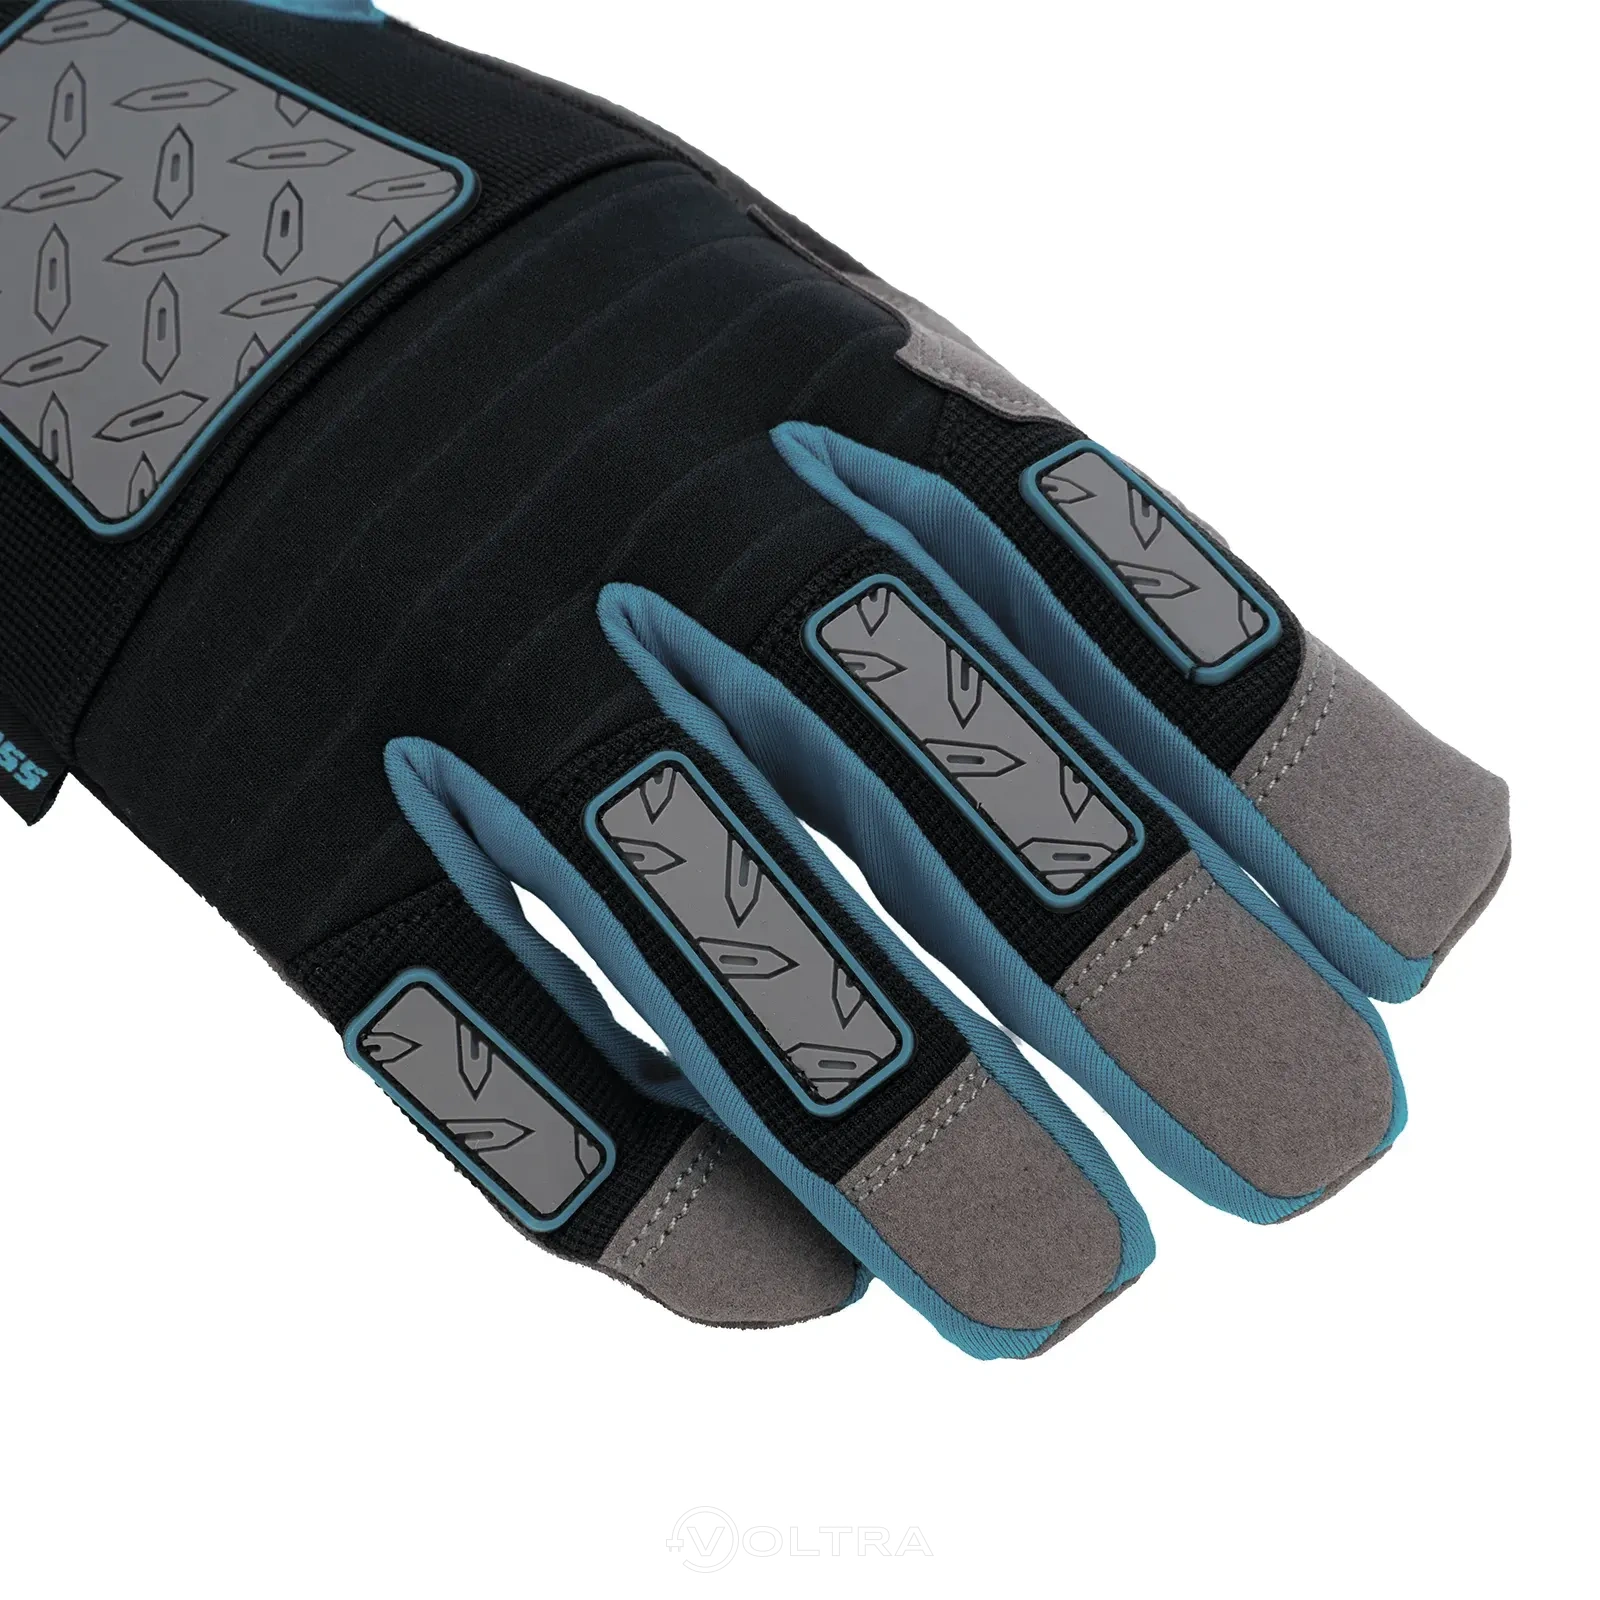 Перчатки универсальные усиленные с защитными накладками DELUXE размер XL (10) Gross (90326)